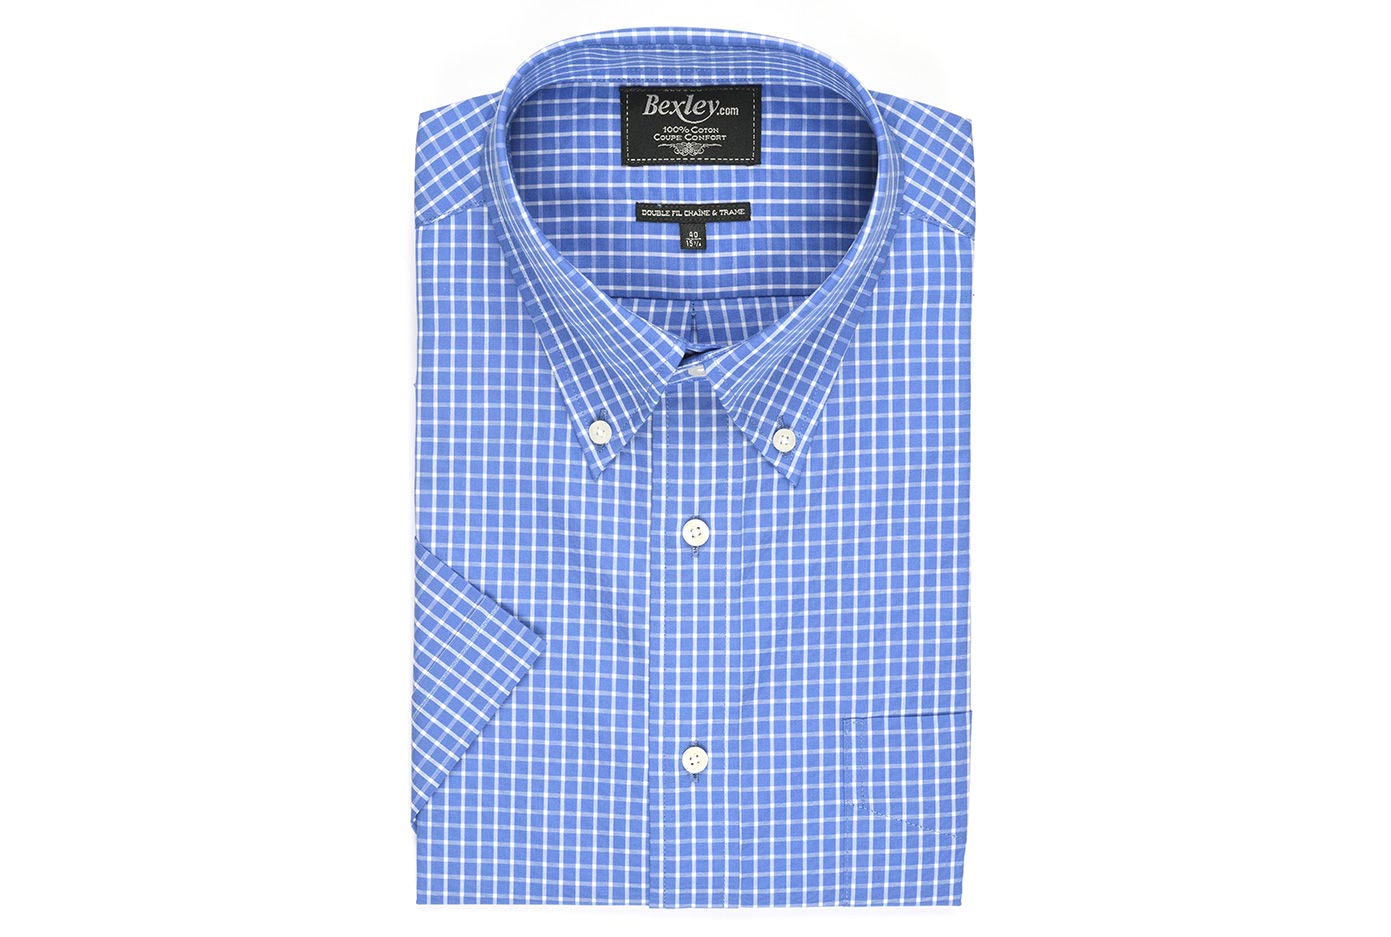 bexley chemise homme 100% coton, bleu et blanc, manches courtes, coupe confort